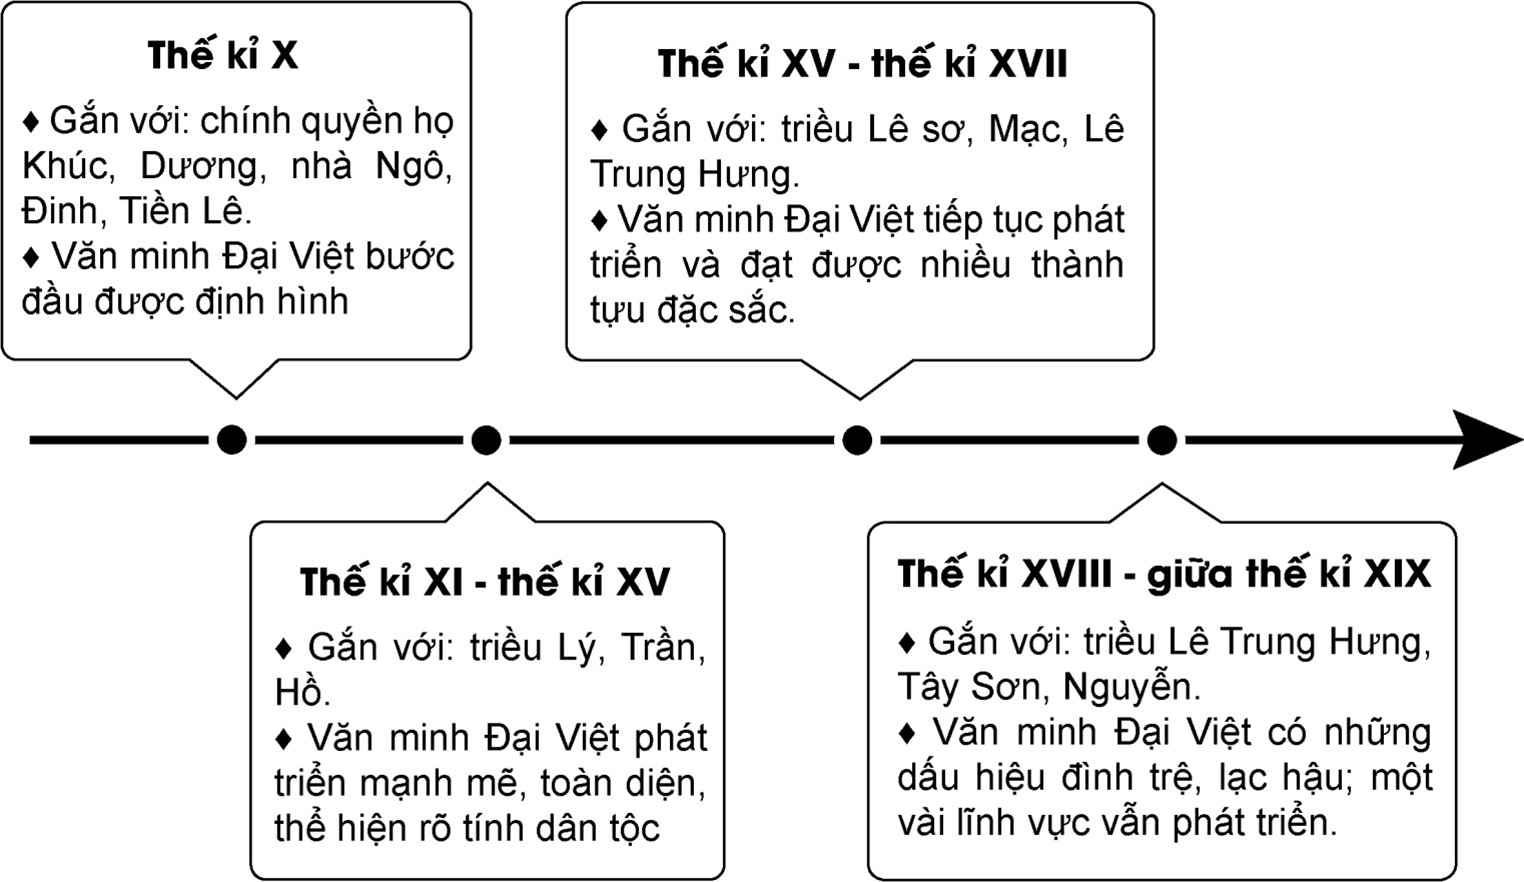 Đọc thông tin và quan sát Hình 14.4 hãy: - Trình bày quá trình phát triển của nền văn minh Đại Việt  (ảnh 1)